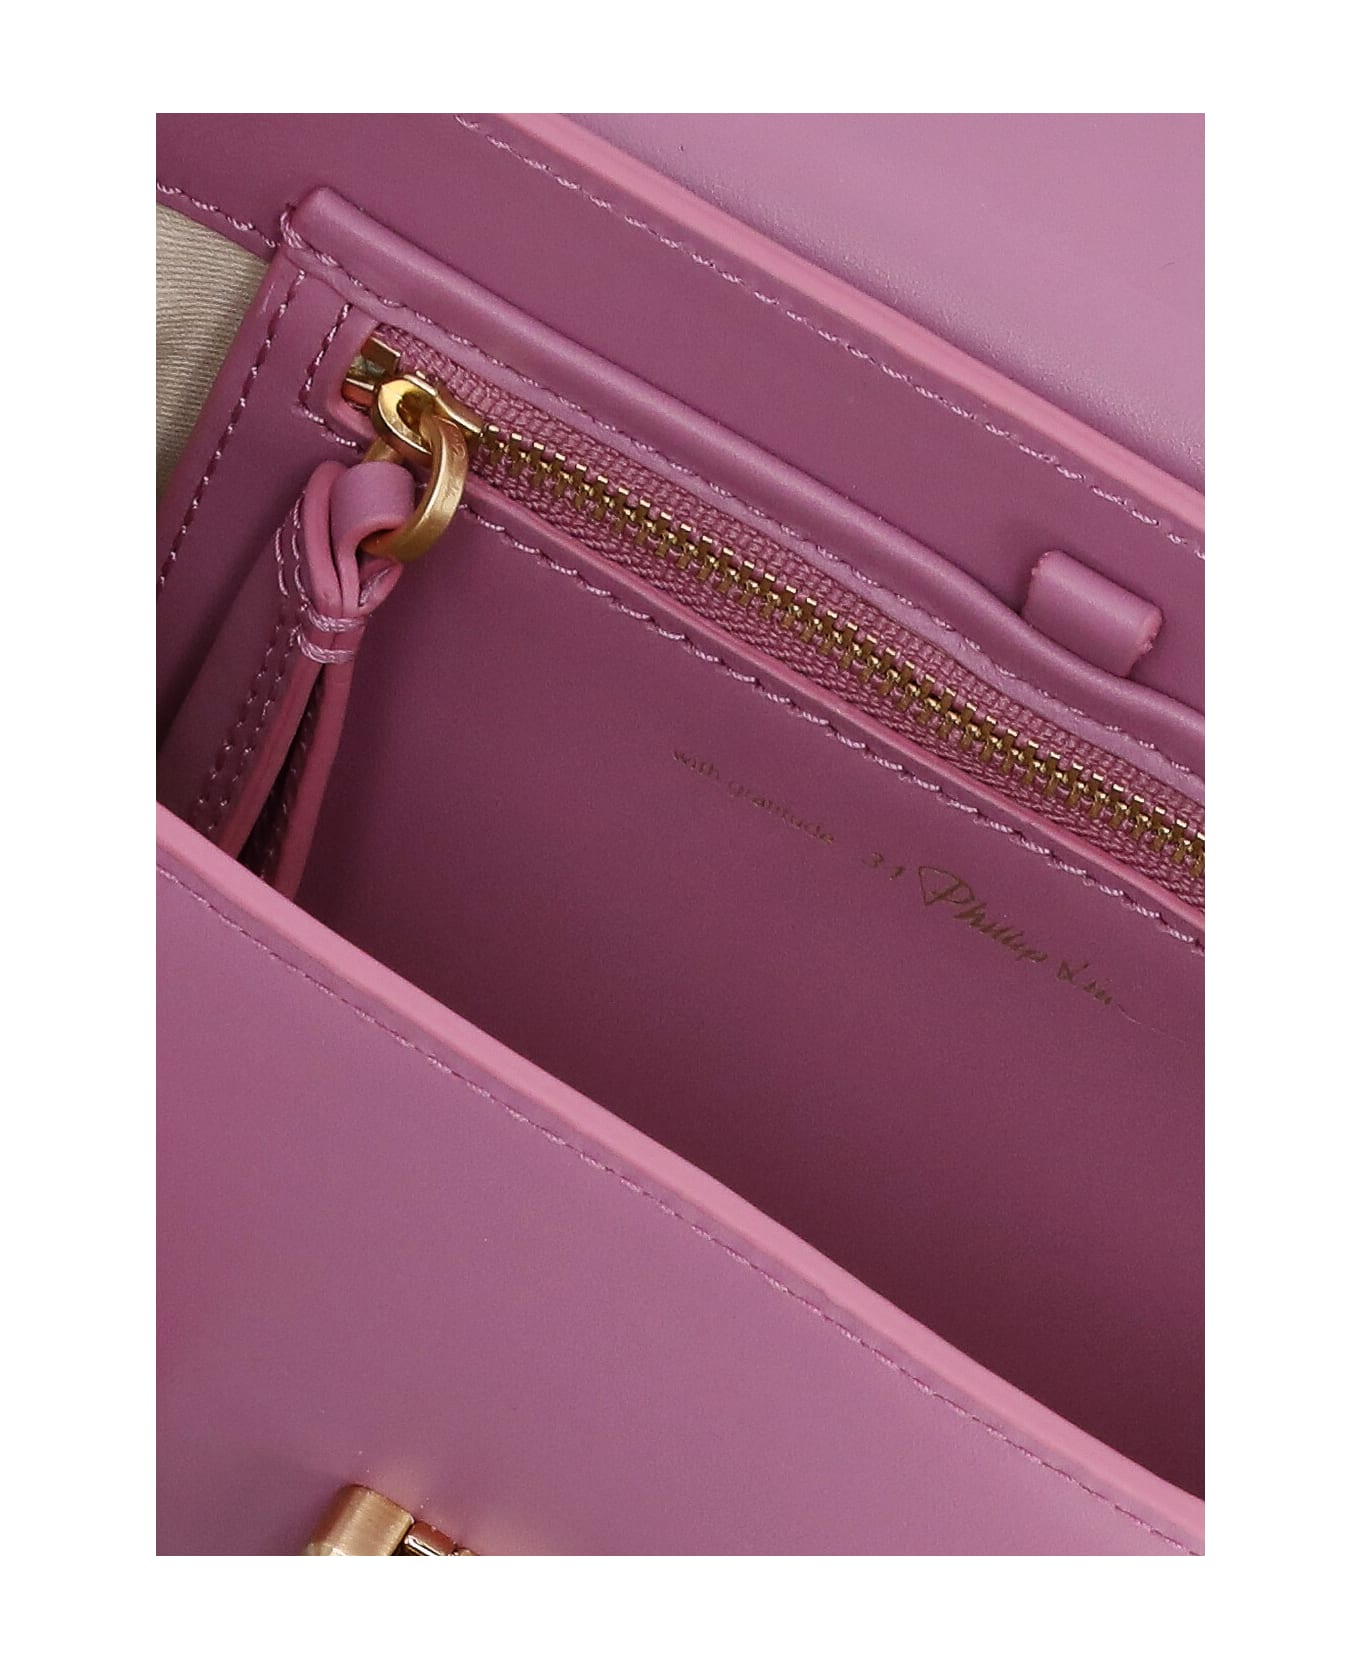 3.1 Phillip Lim Pashli Mini Satchel Handbag - Pink